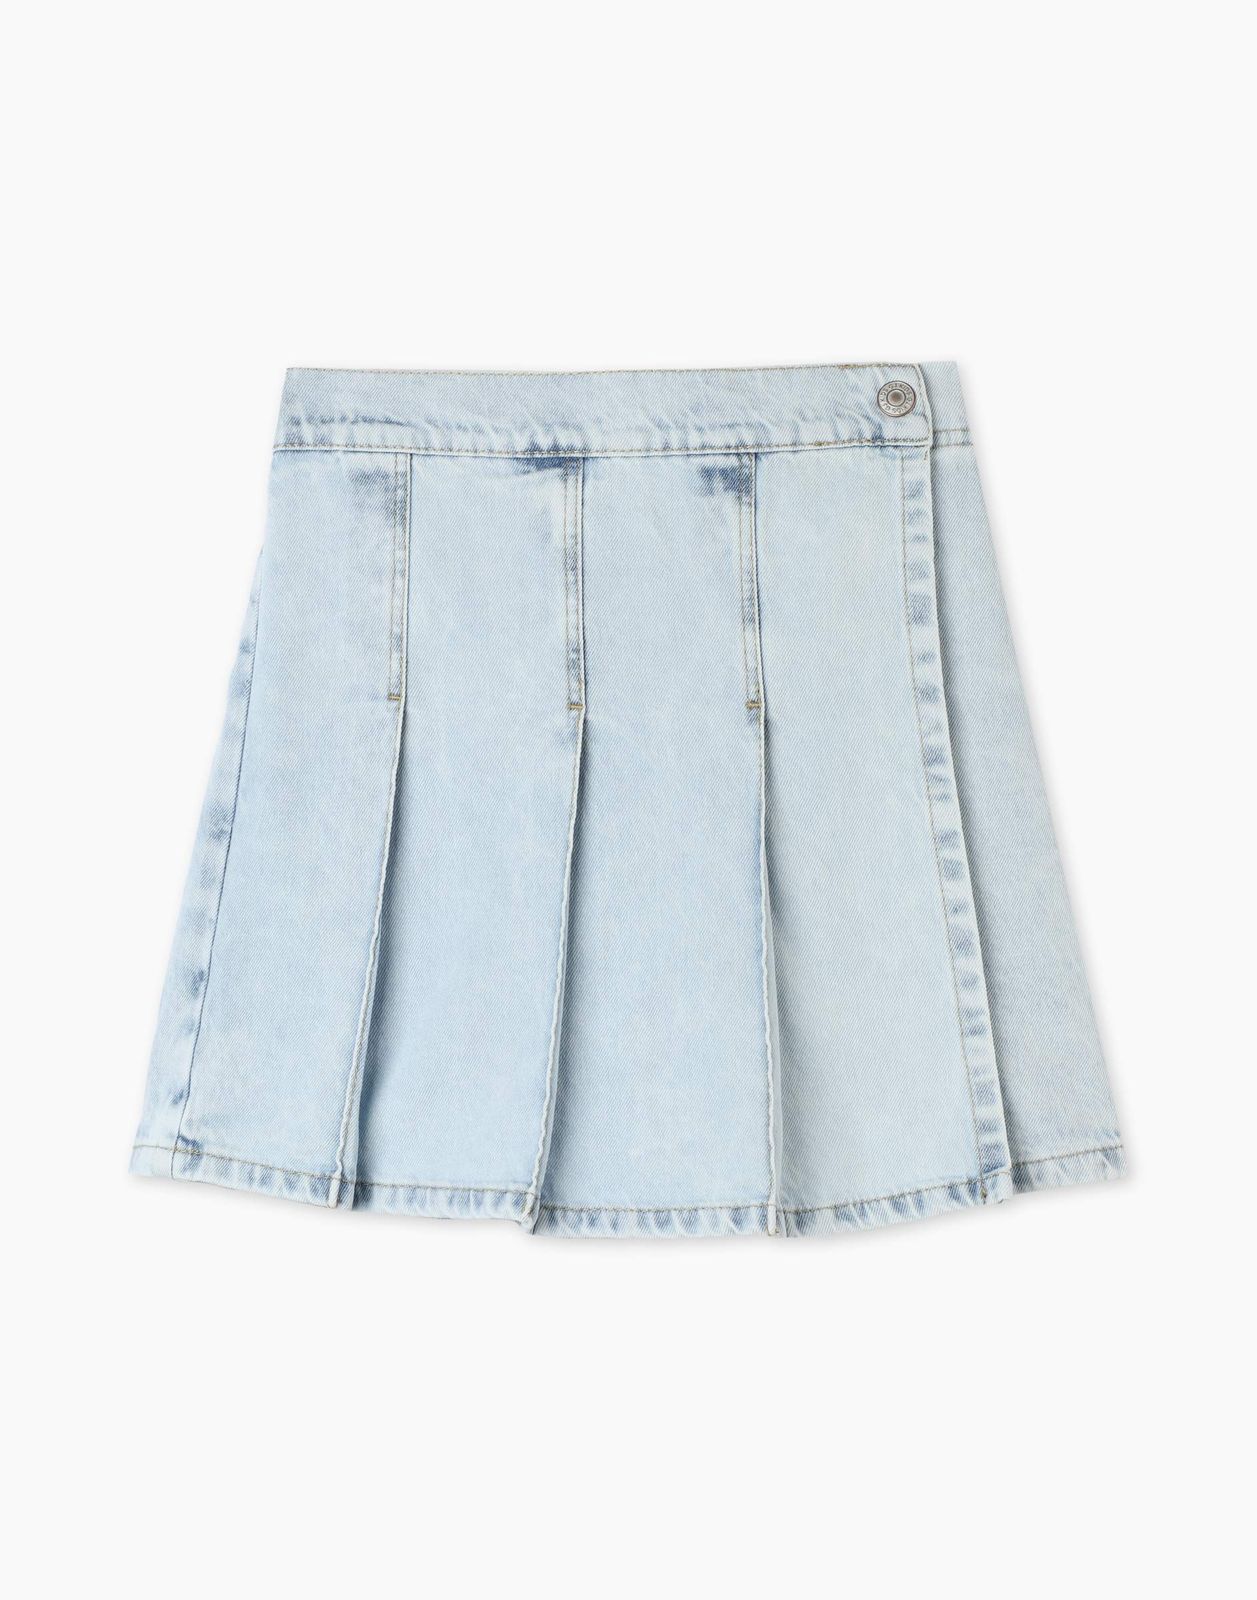 Джинсовая юбка-шорты Gloria Jeans GSK018325 4-6л/110-116 для девочки